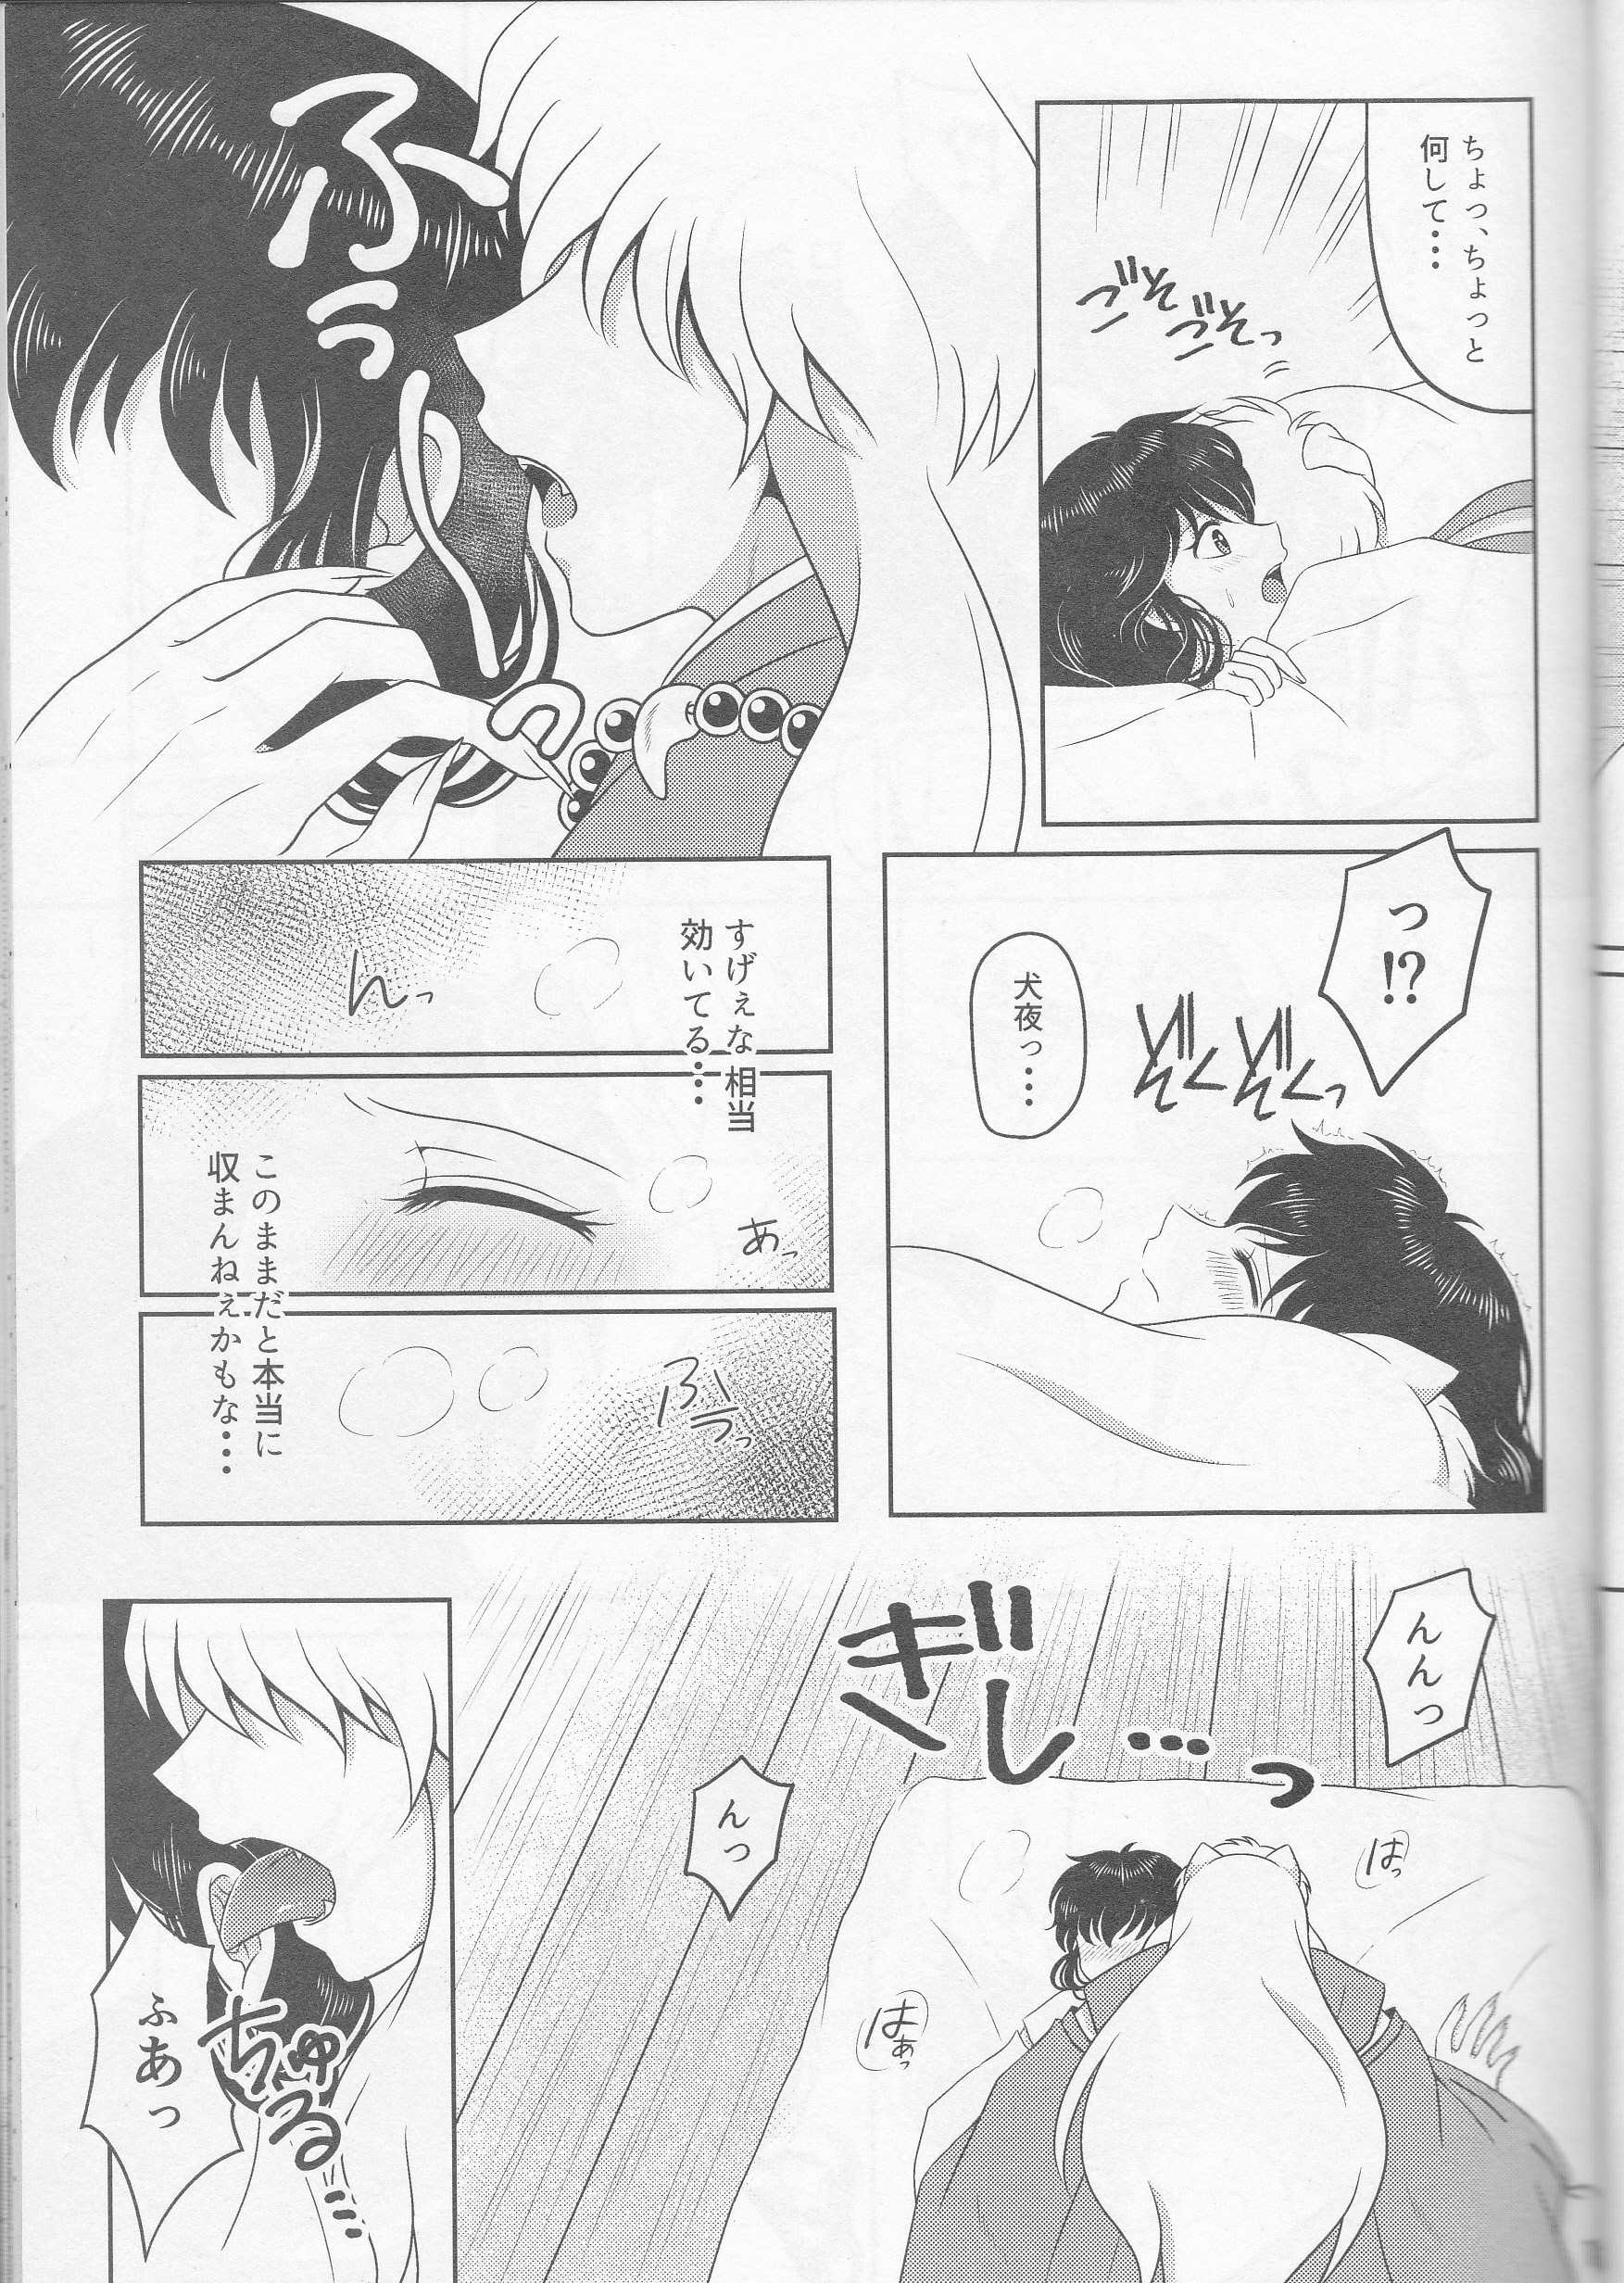 Koi Gusuri - Love drug hentai manga picture 14